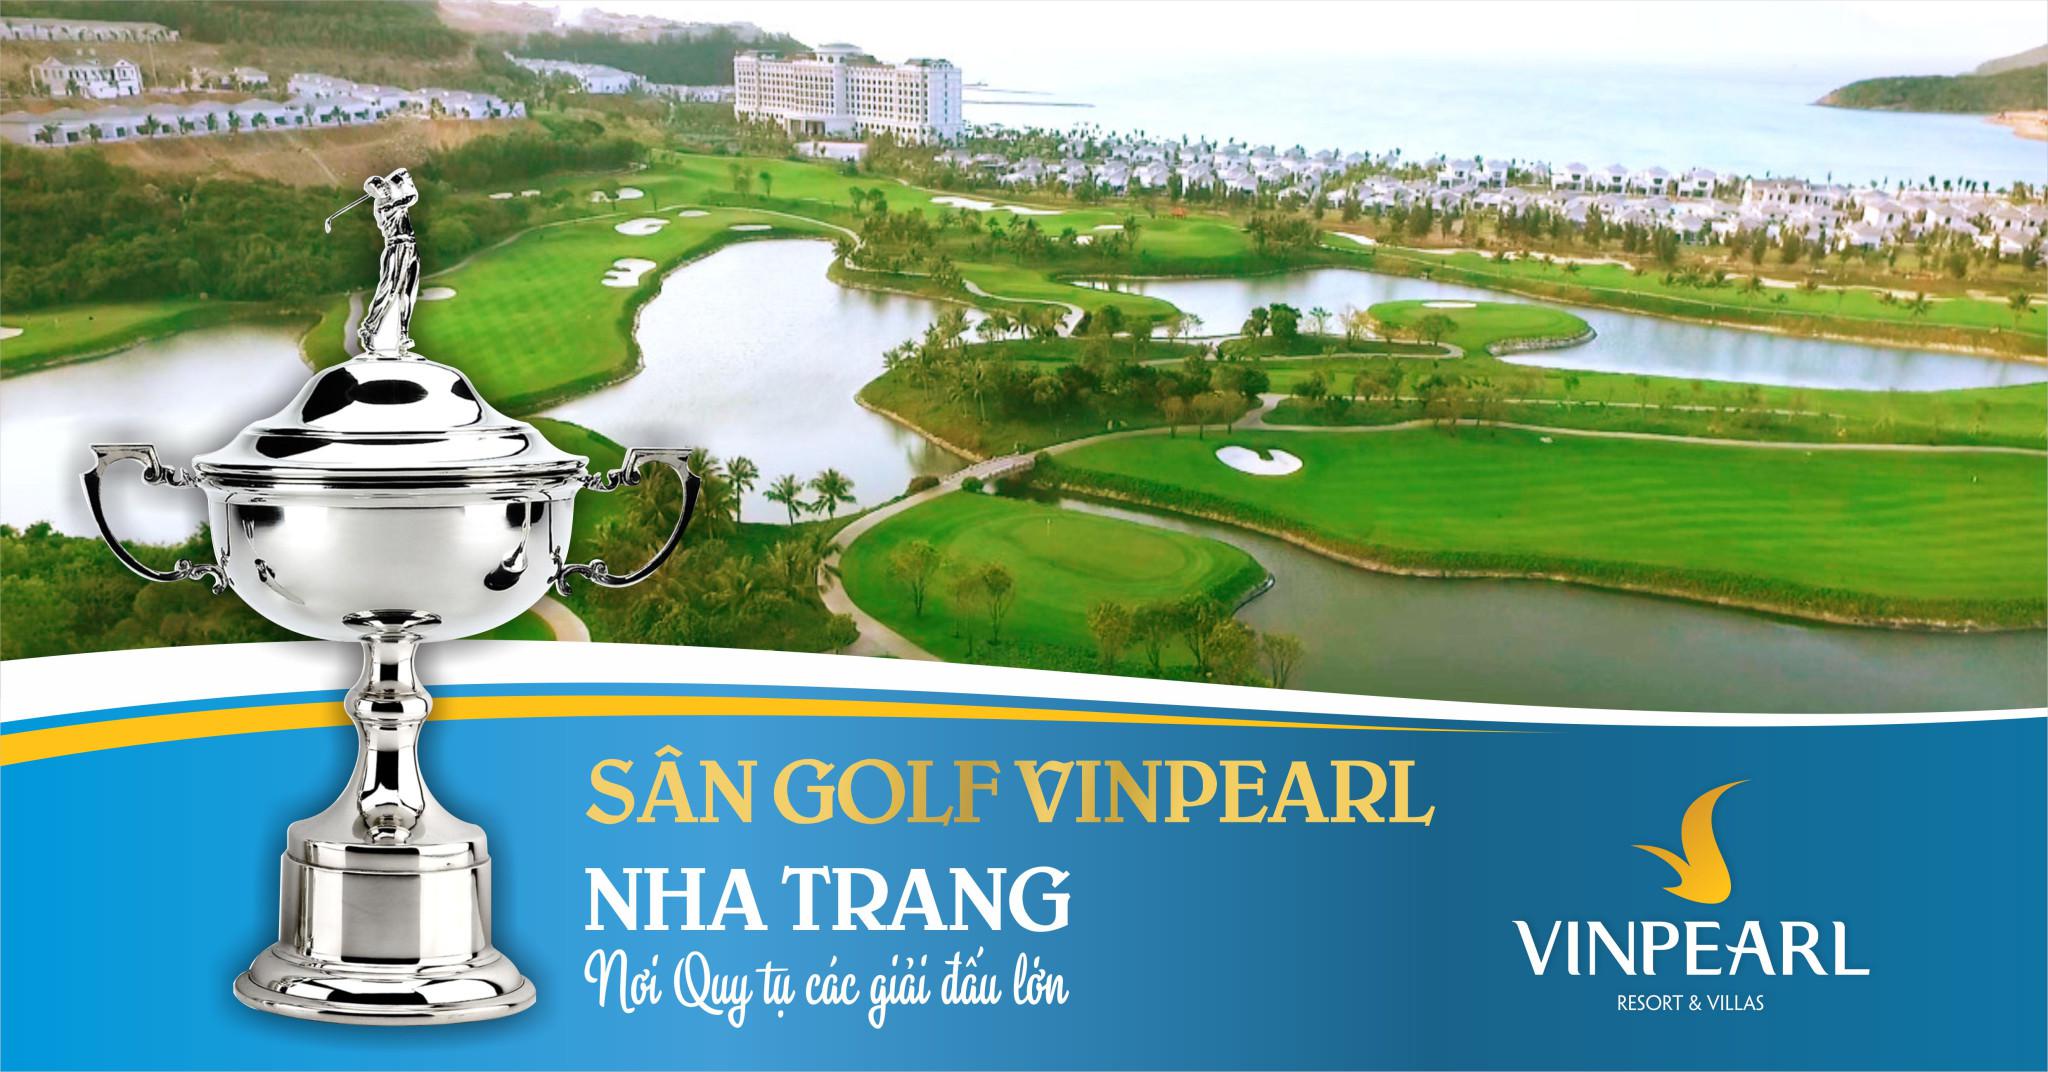 Stay & Play - Gói chơi golf và nghỉ dưỡng đẳng cấp 3N2D tại Vinpearl Nha Trang, Phú Quốc